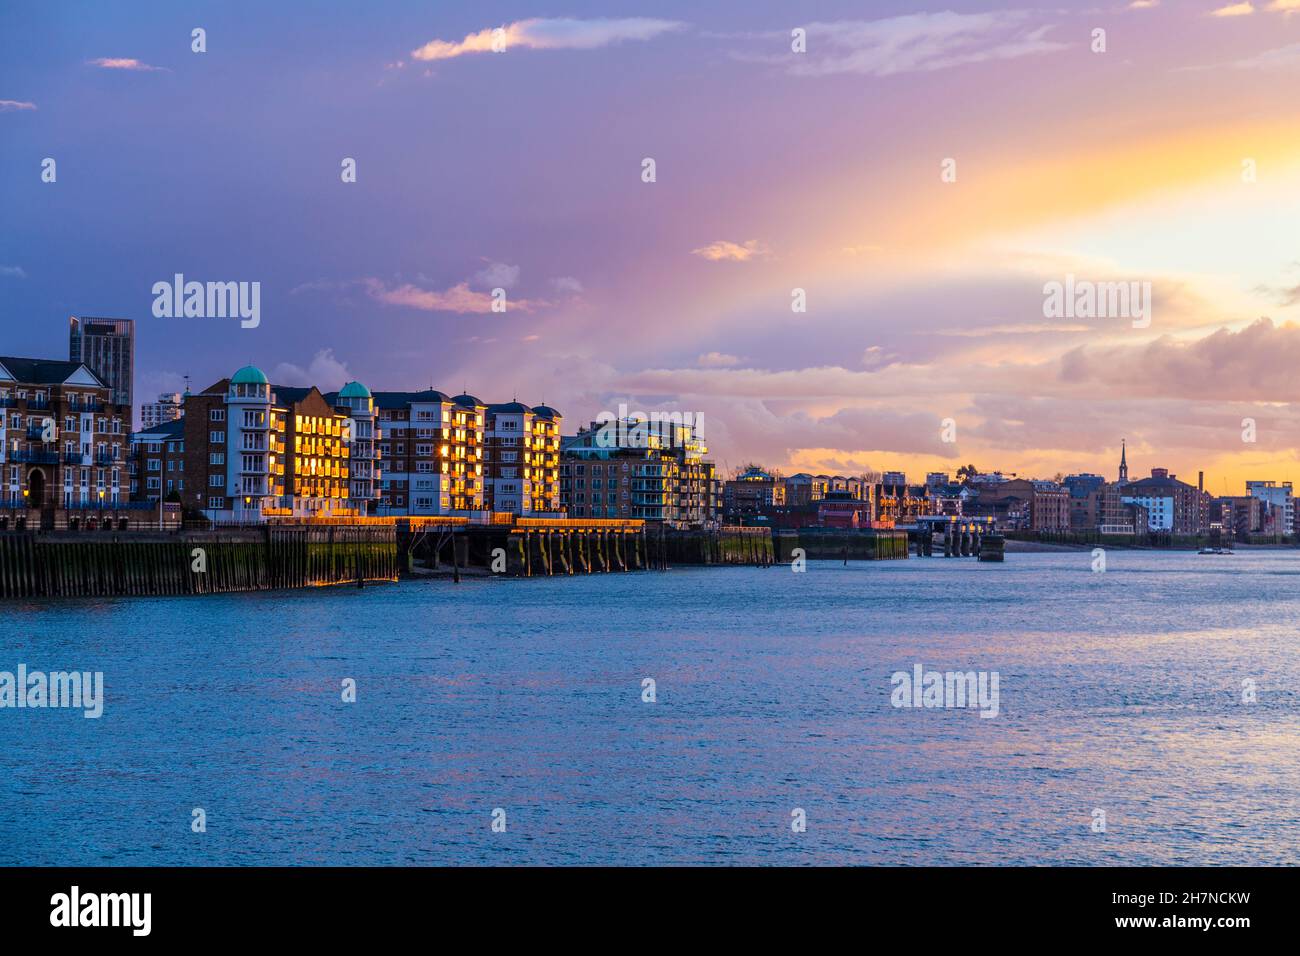 Wohngebäude in Rotherhithe, beleuchtet von Sonnenuntergang und der Themse, London, Großbritannien Stockfoto